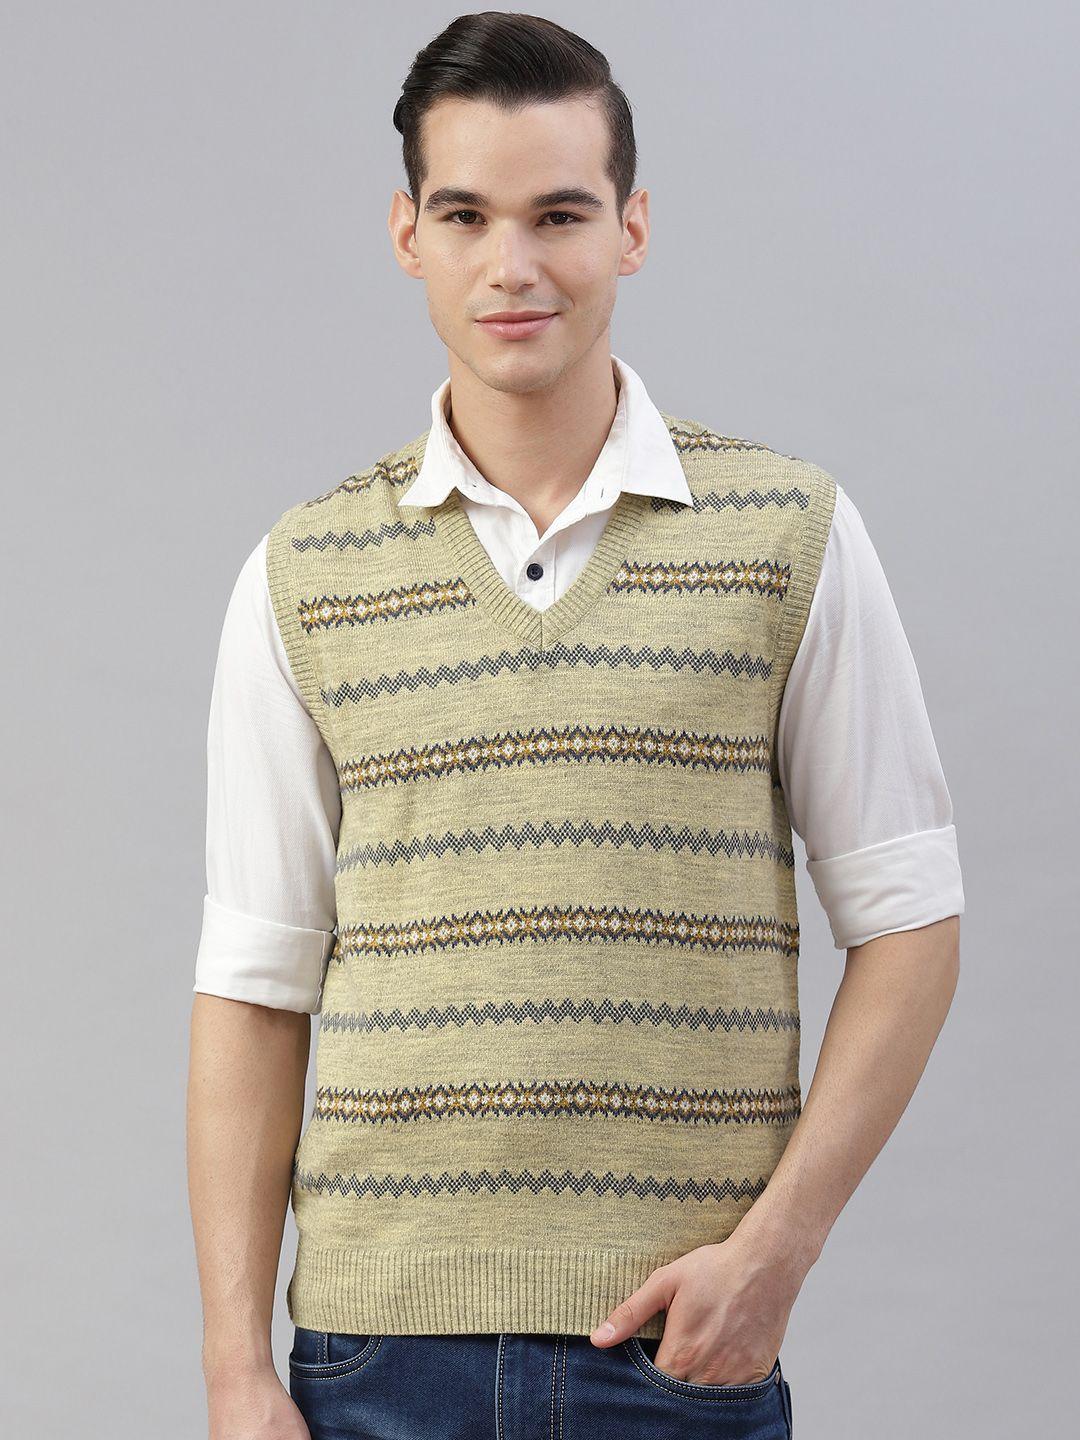 pierre carlo men beige & yellow striped sweater vest